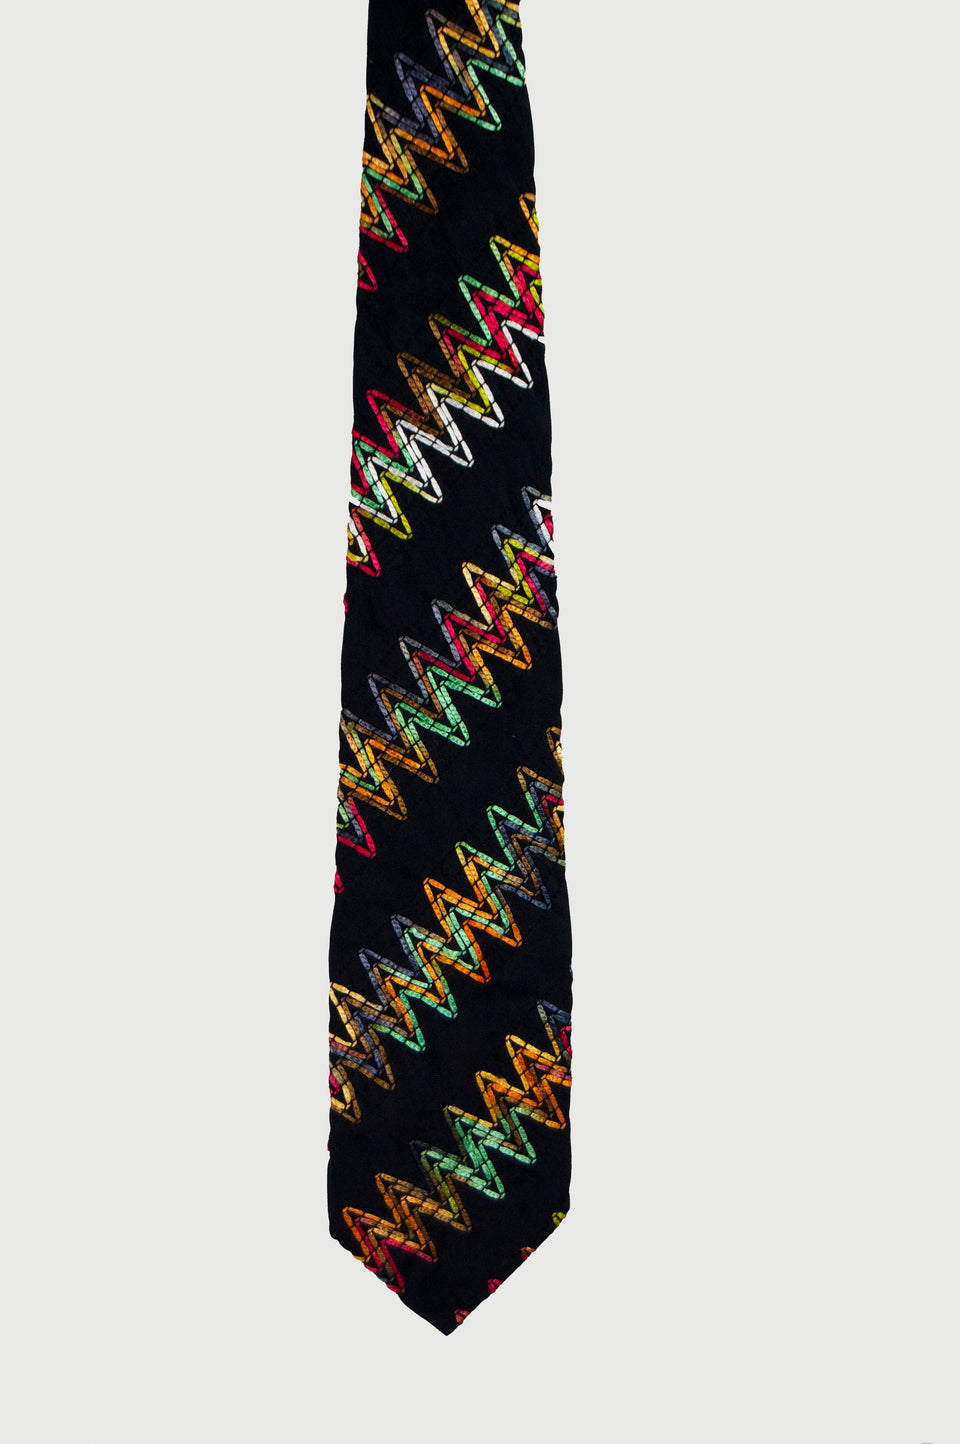 Missoni Men's Suit Tie